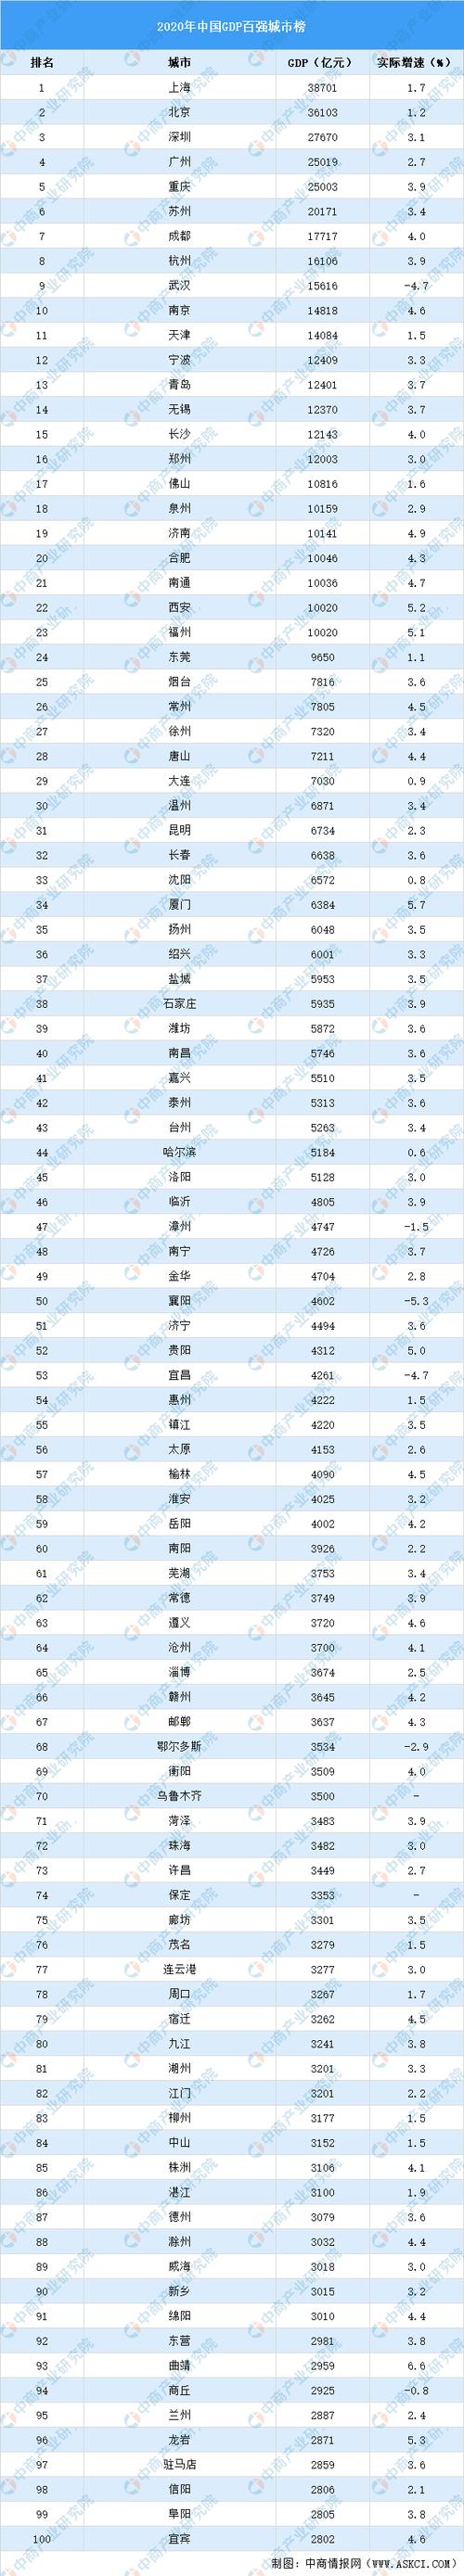 中国城市经济排名